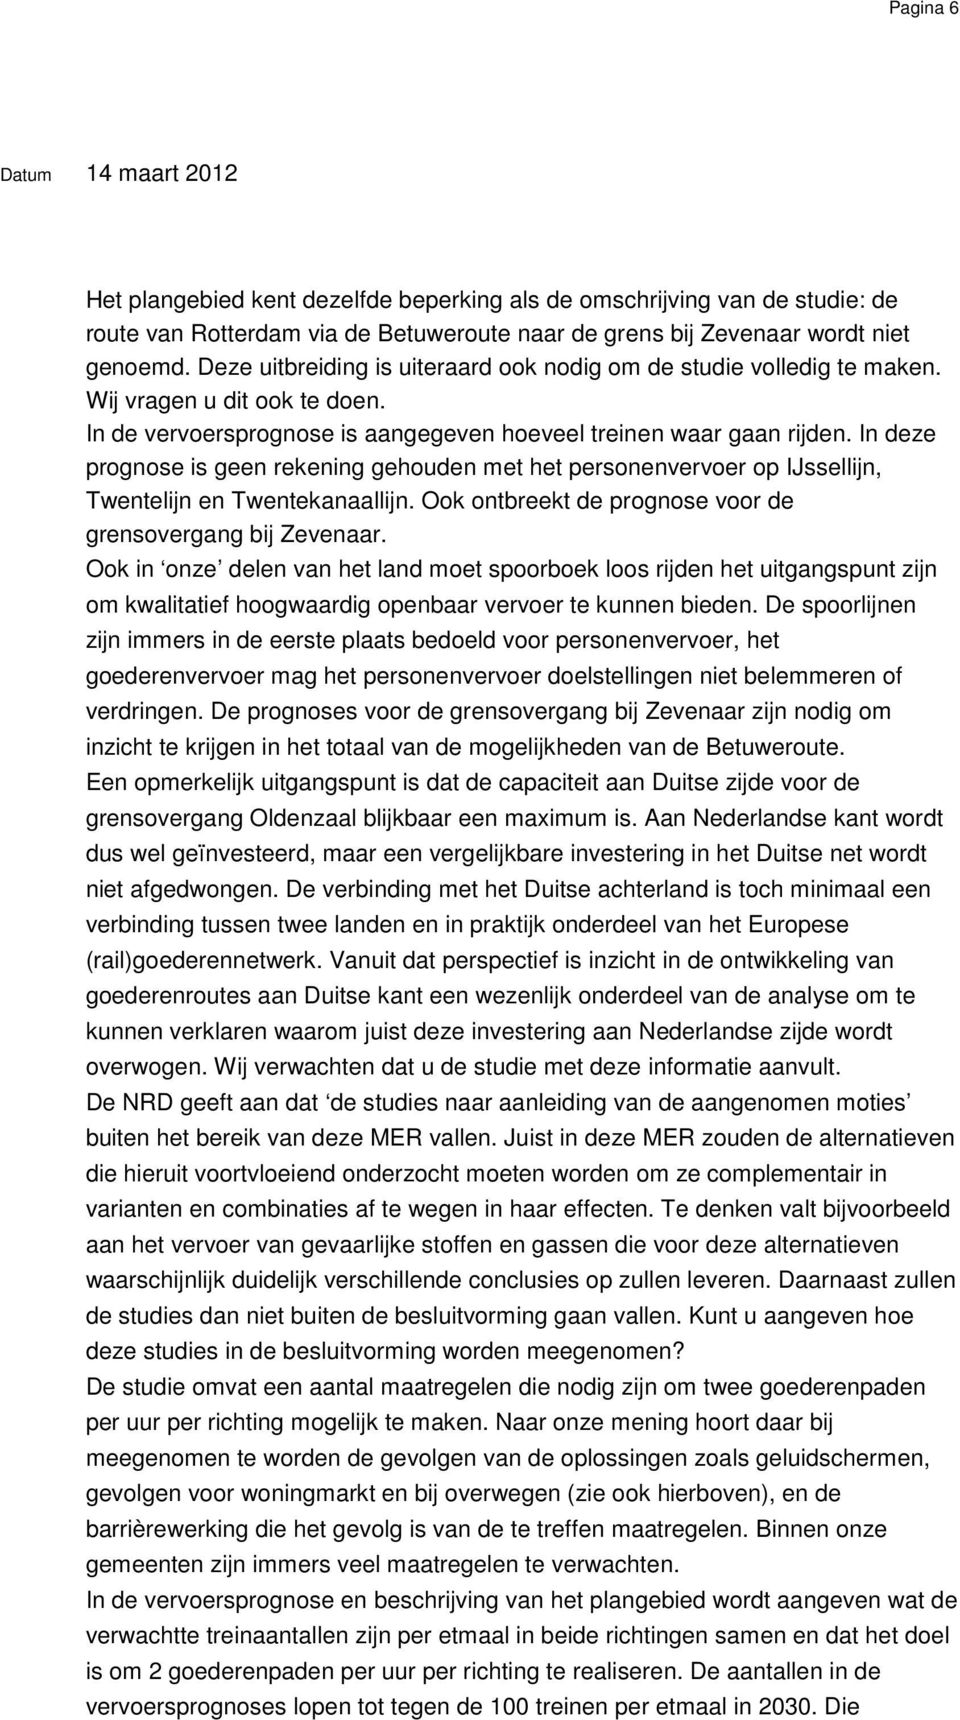 In deze prognose is geen rekening gehouden met het personenvervoer op IJssellijn, Twentelijn en Twentekanaallijn. Ook ontbreekt de prognose voor de grensovergang bij Zevenaar.